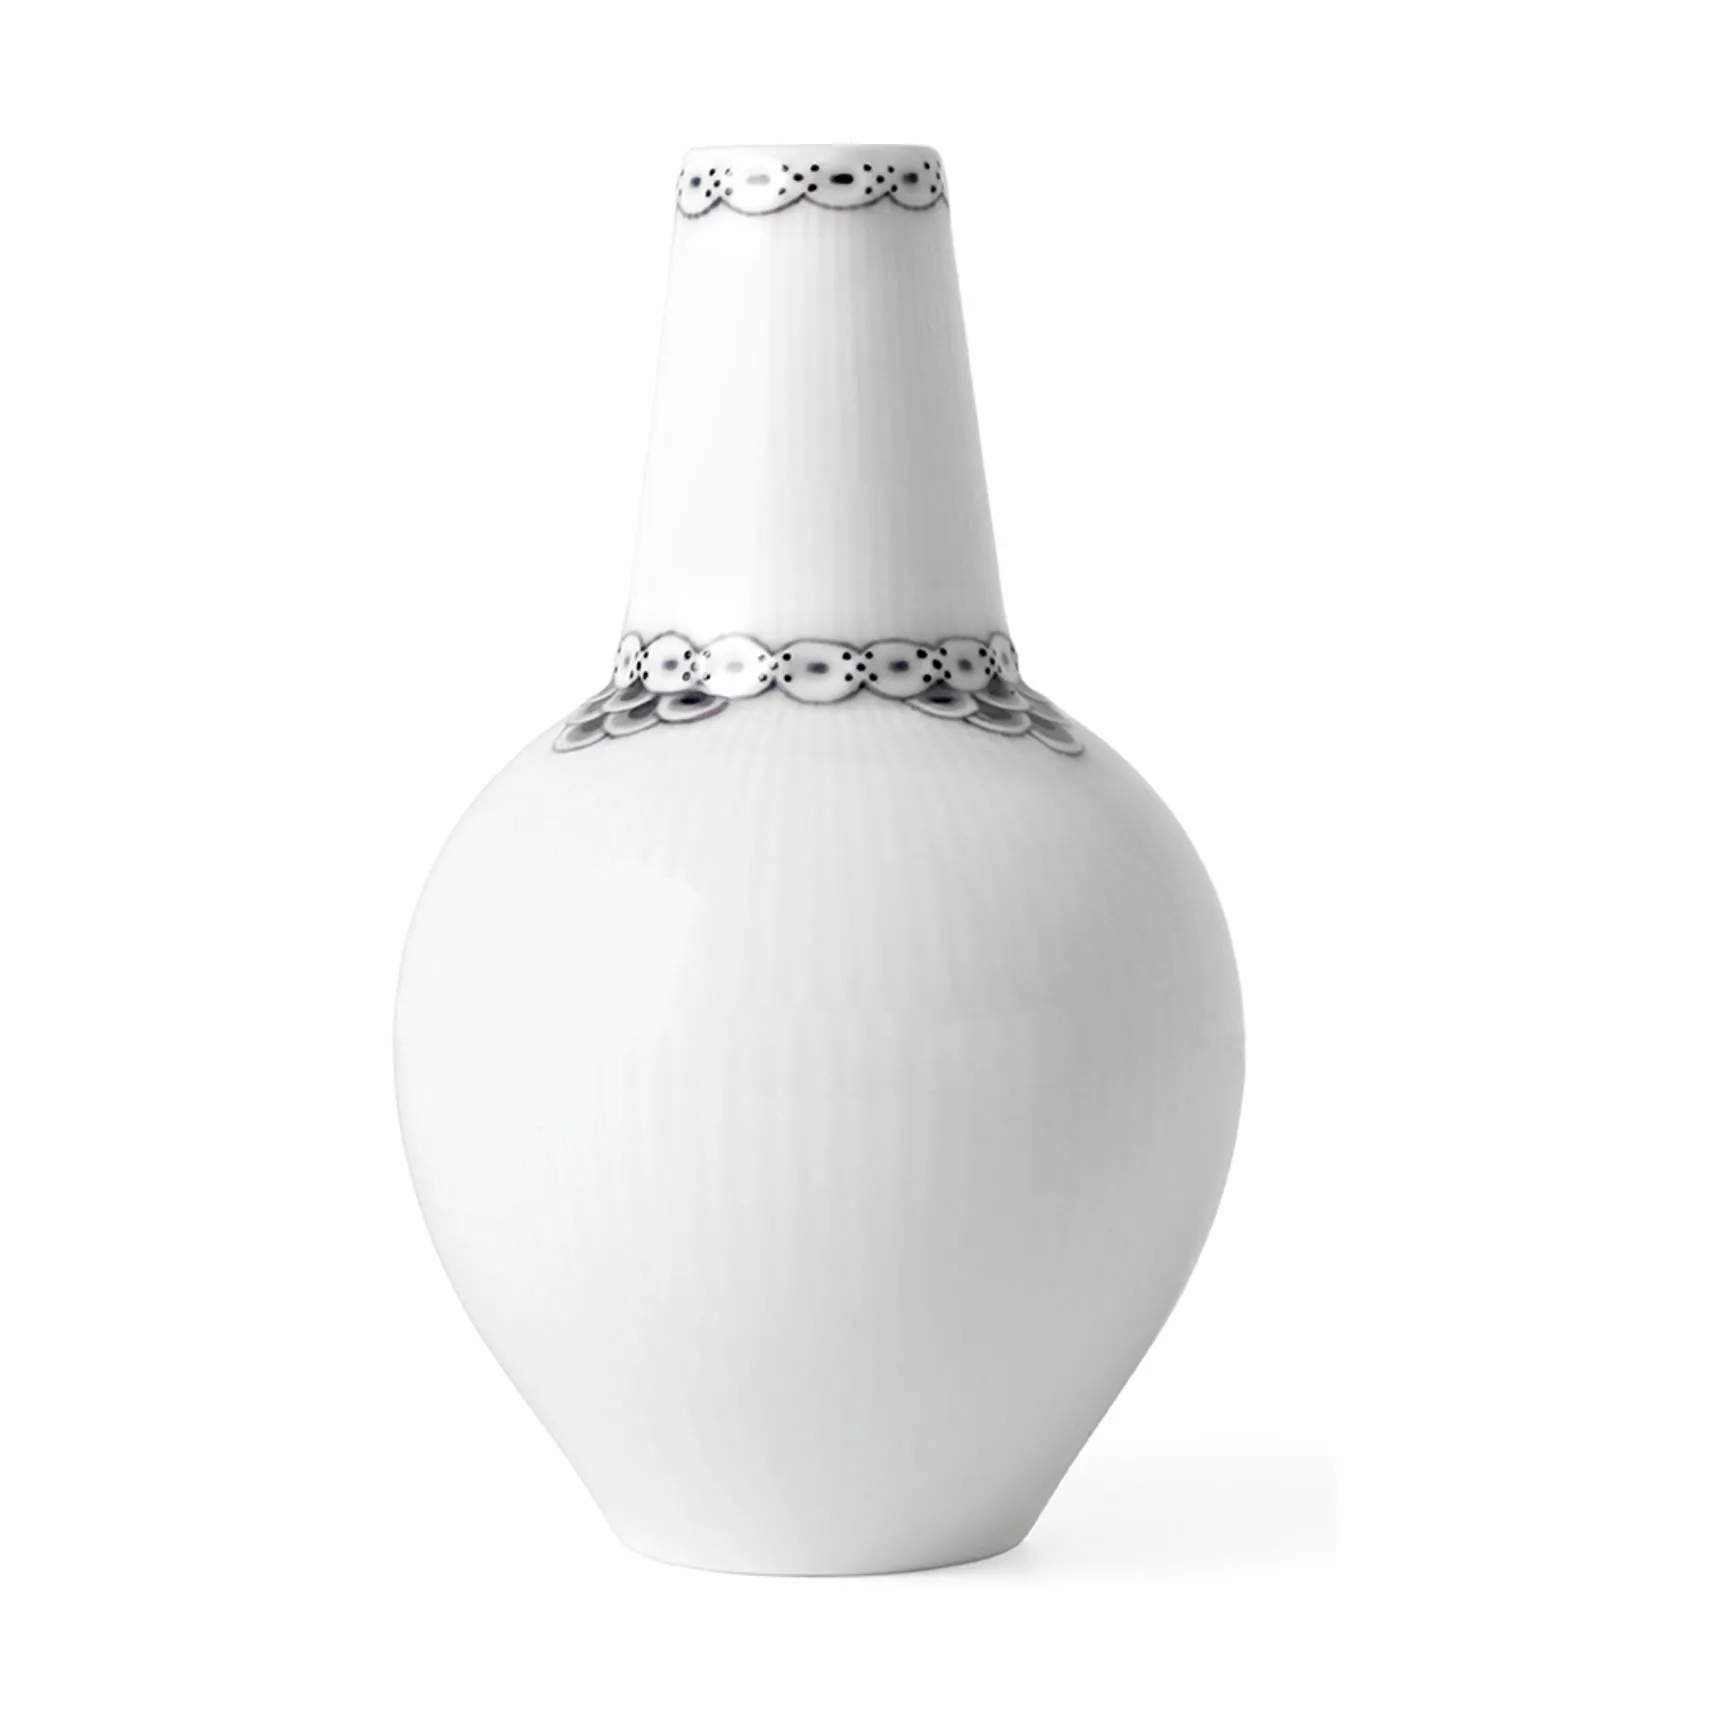 Sort Riflet Blonde Vase, hvid/sort, large